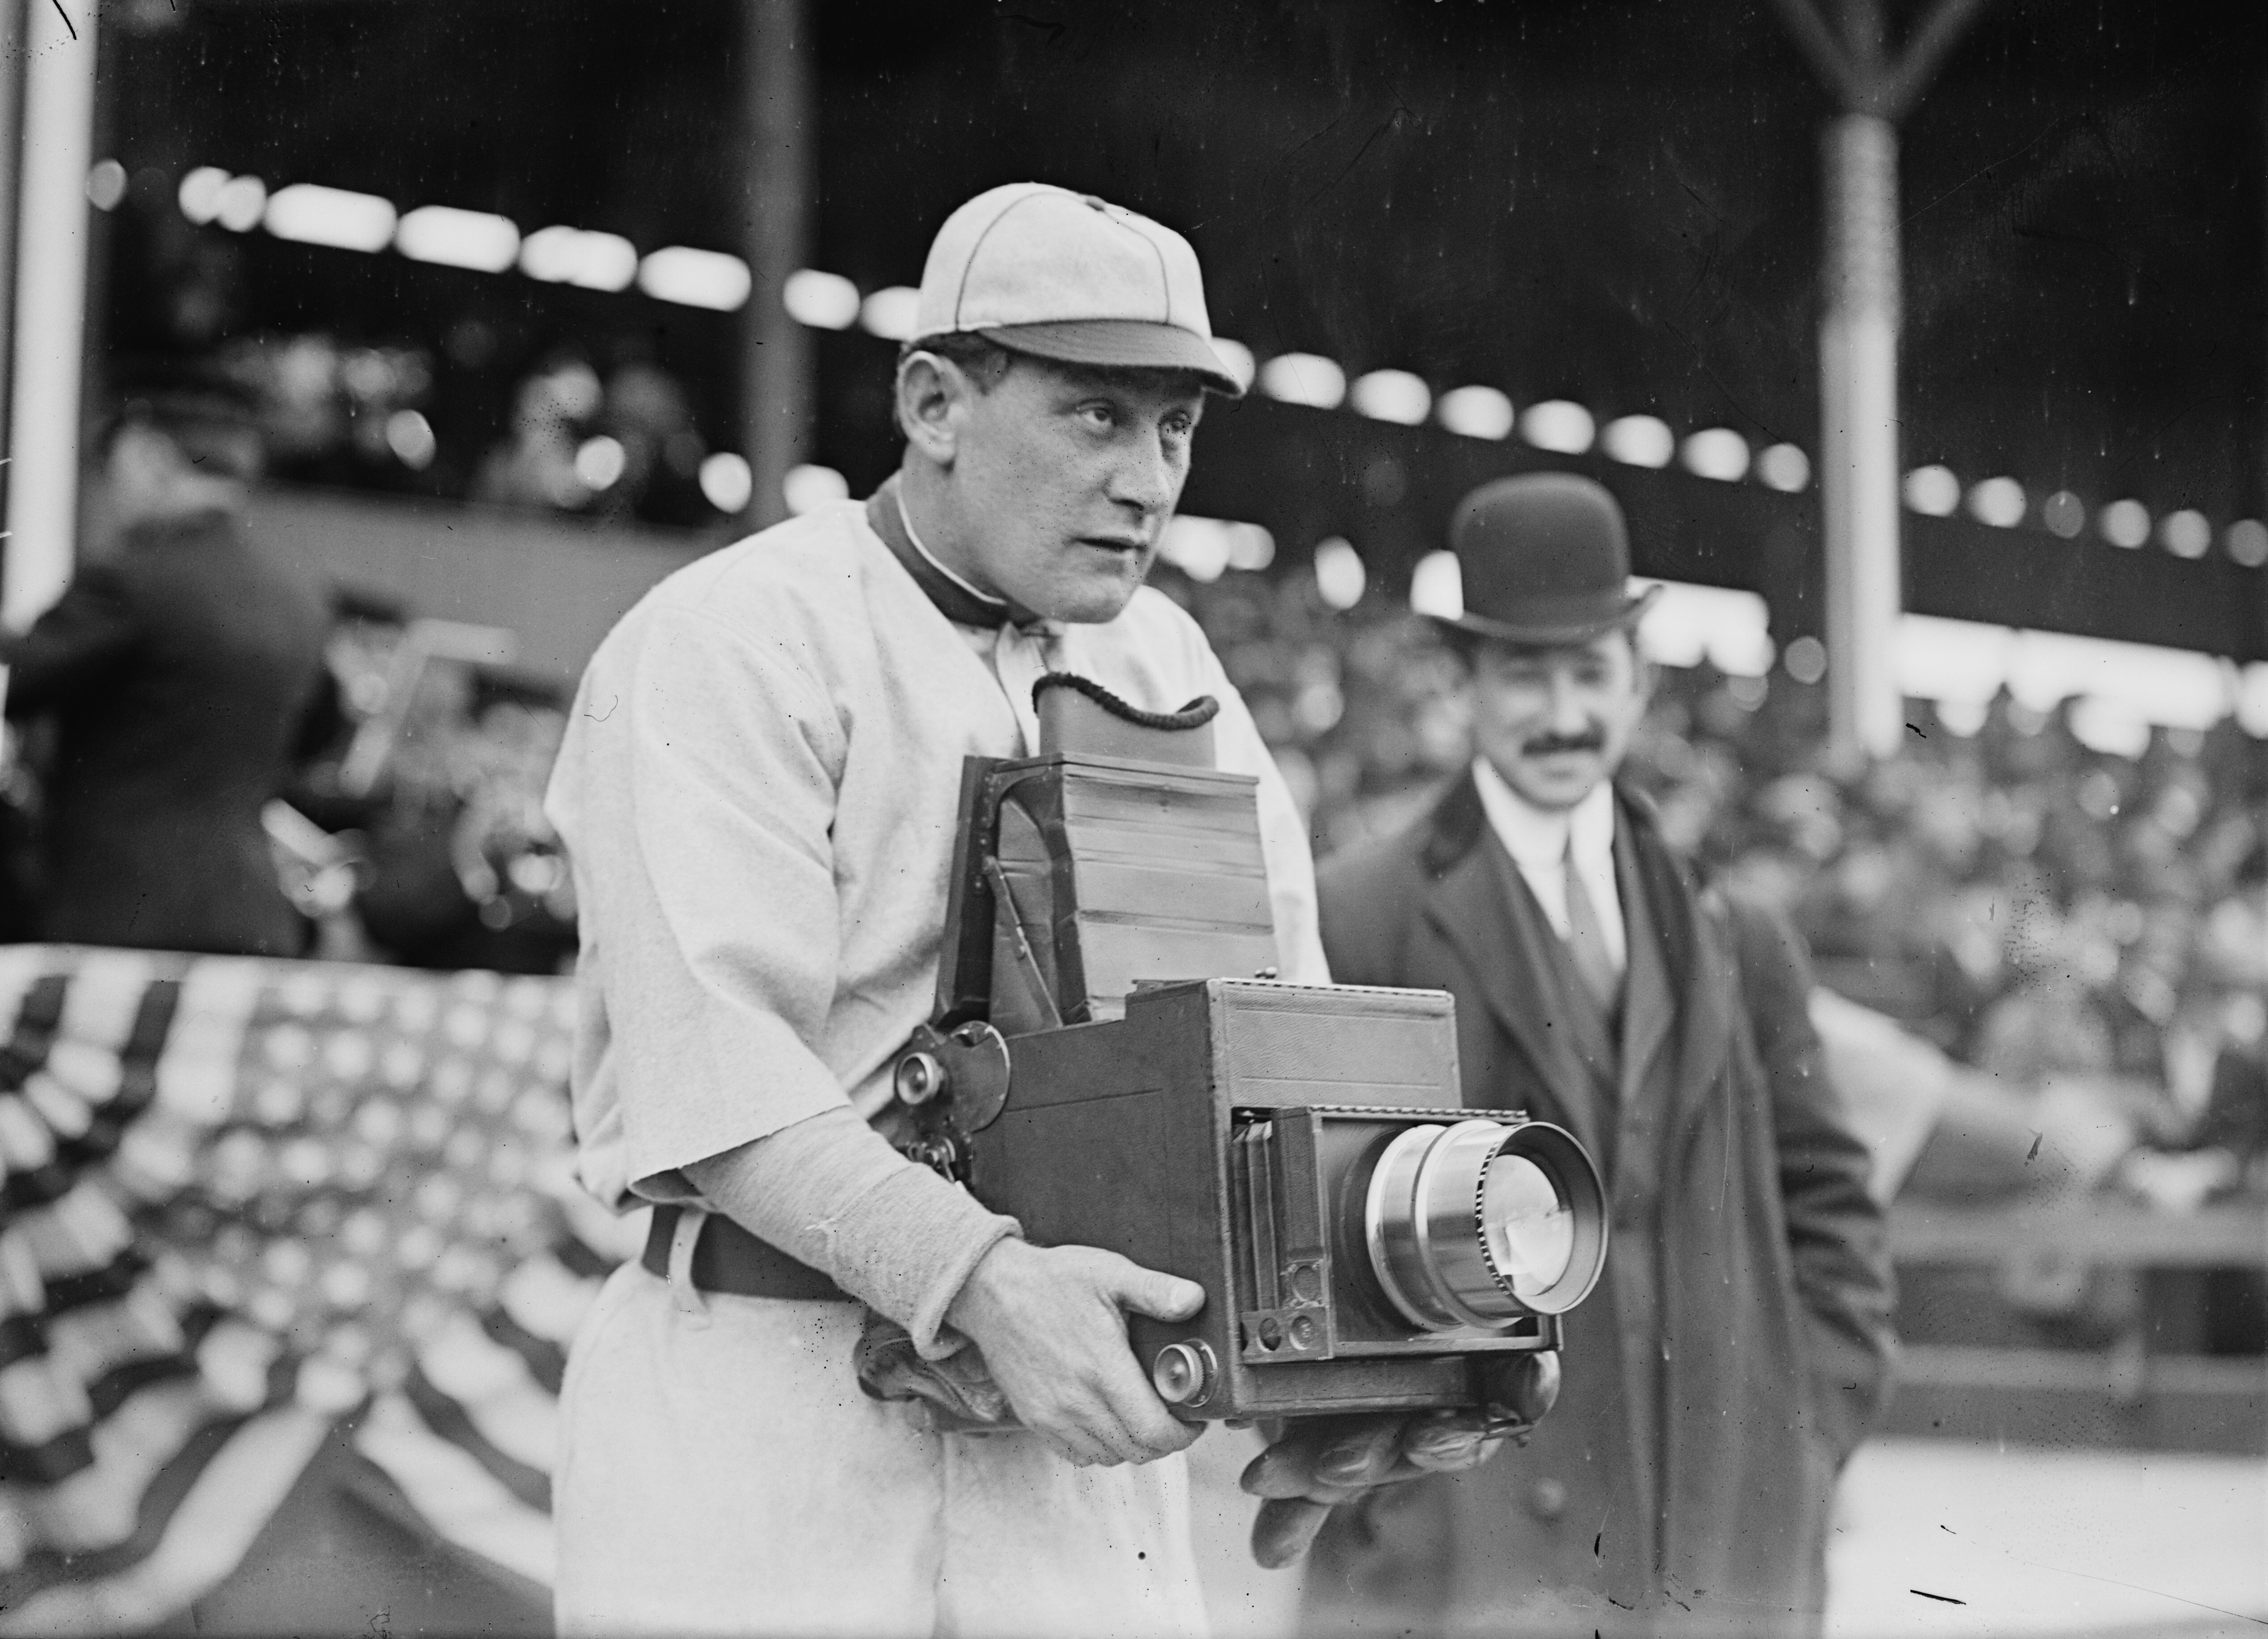 Знаменитый бейсболист Герман Шефер пробует себя по другую сторону объектива на игре между Вашингтон Сенаторз и Нью-Йорк Хайлендэрс, 1911. Фотография из коллекции Джорджа Грантема Бейна